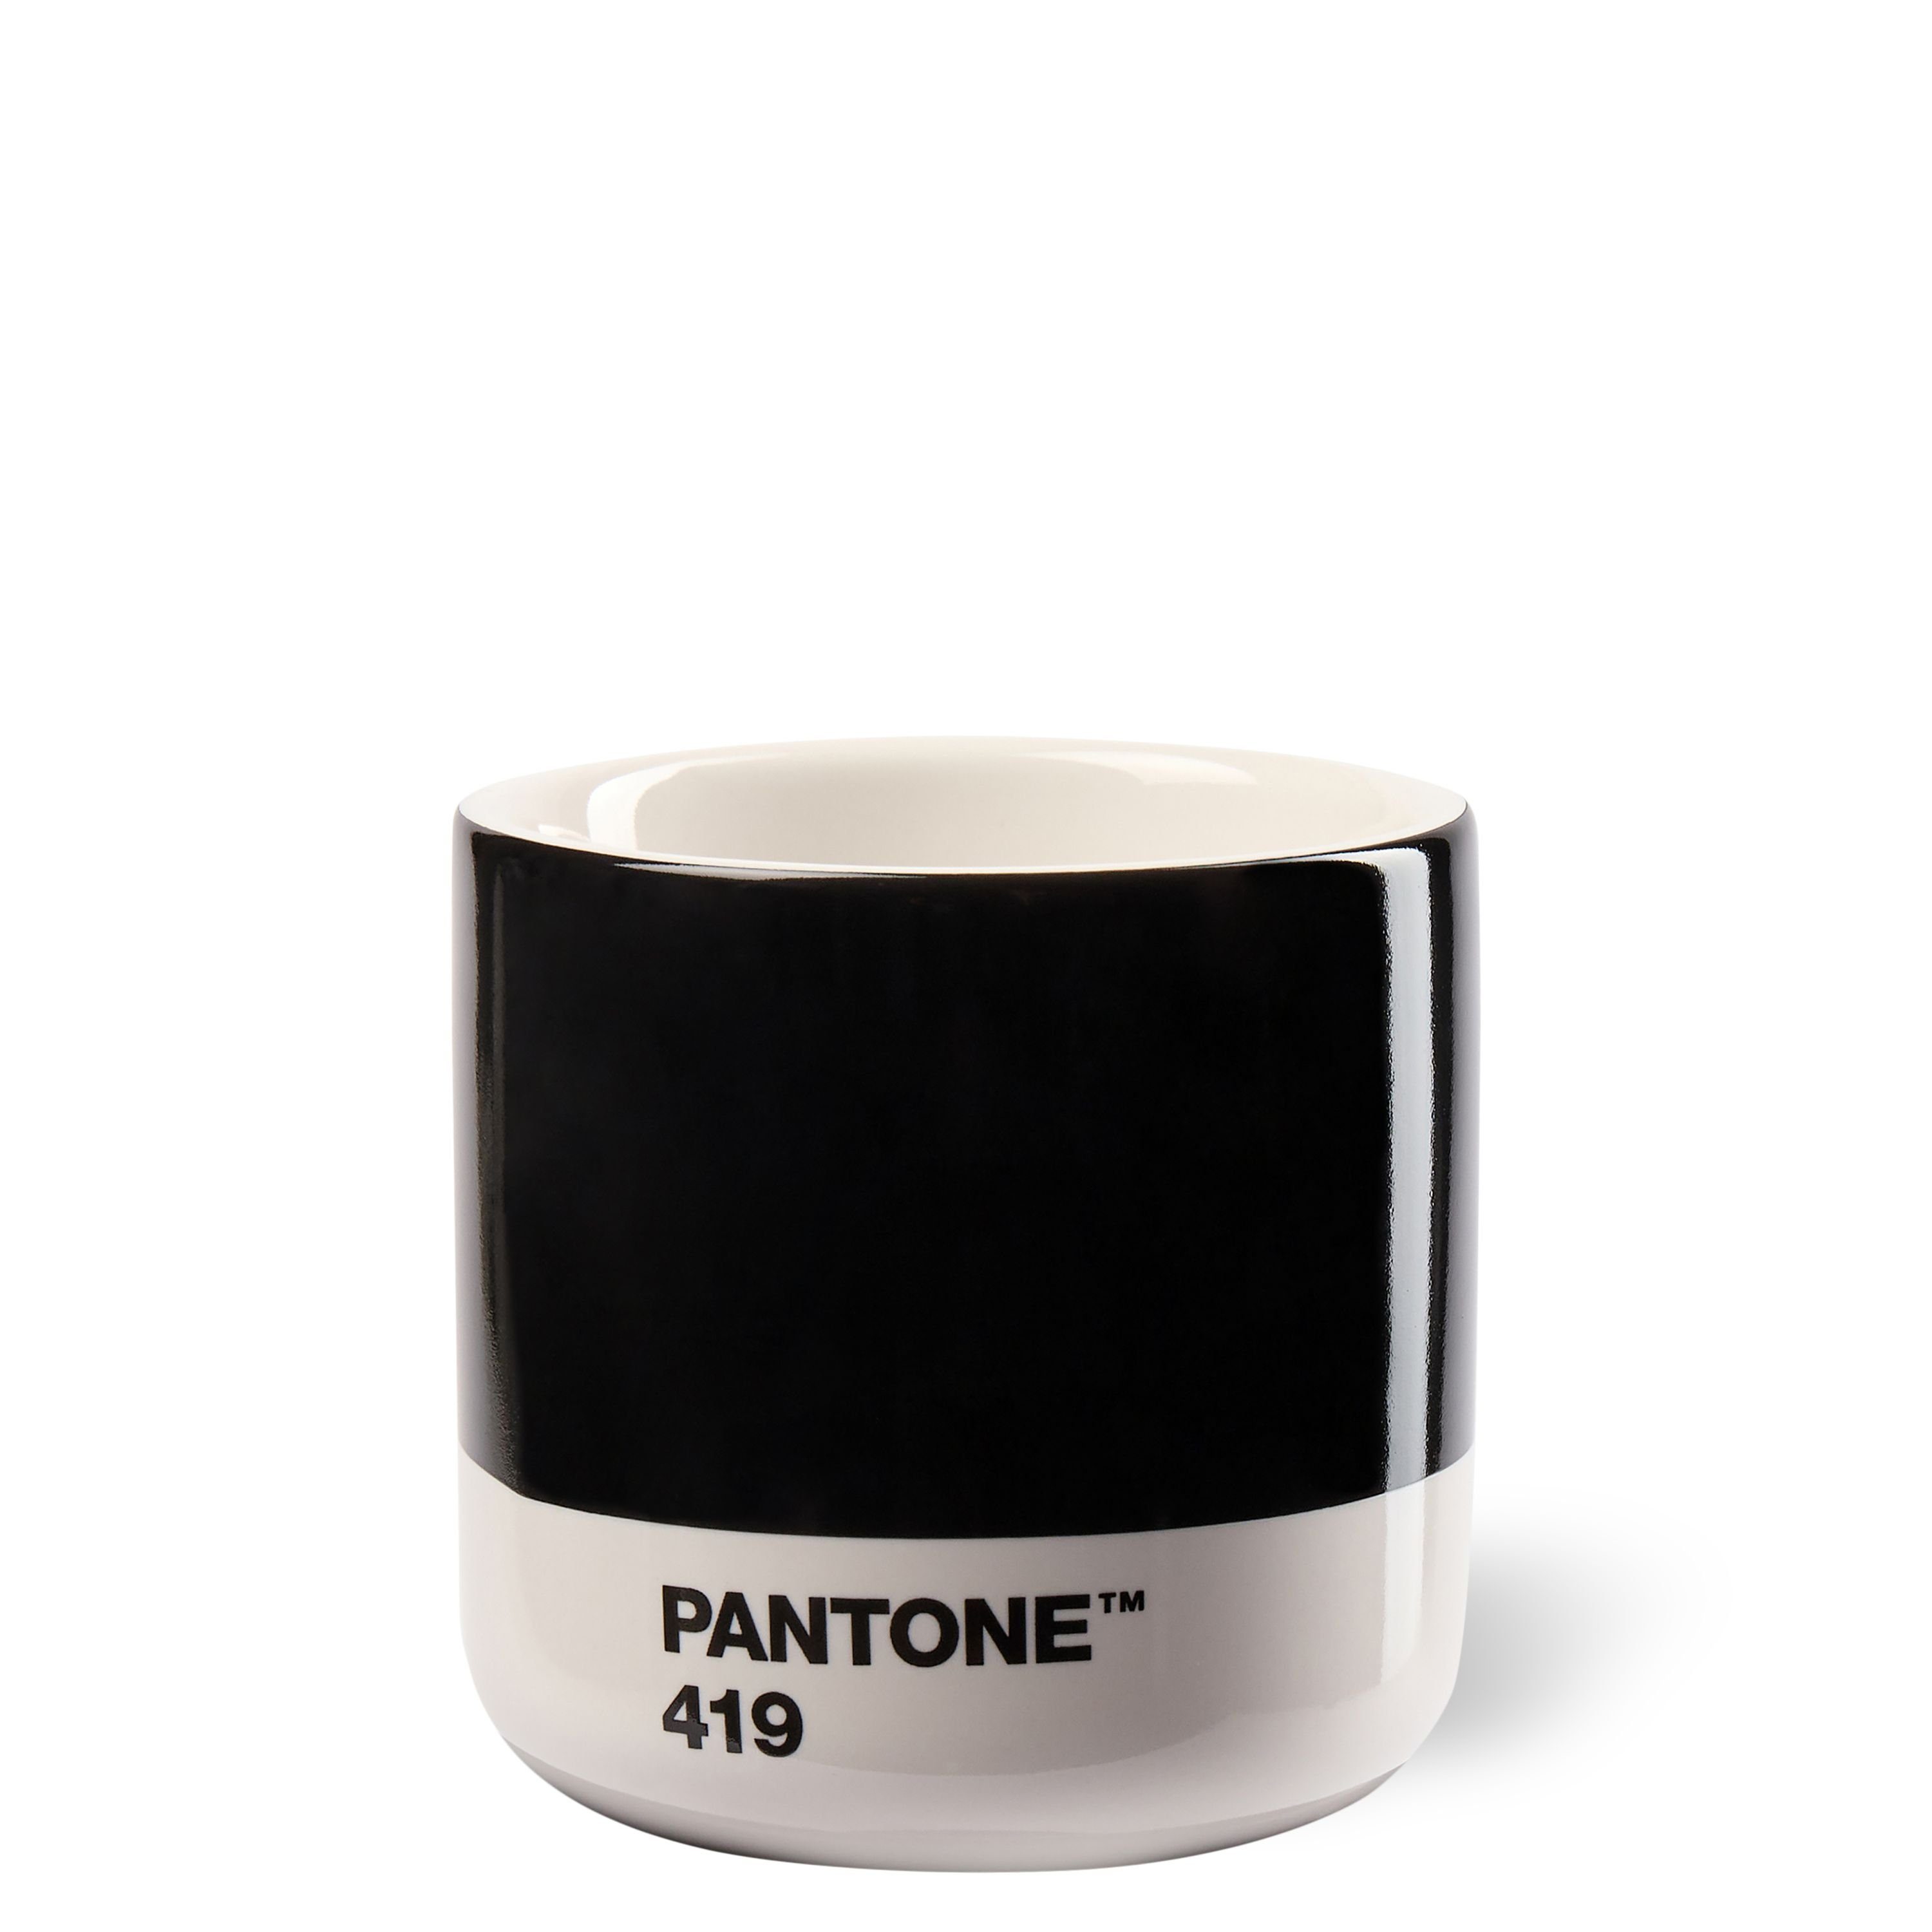 PANTONE Kaffeeservice, PANTONE Black Macchiato C Thermobecher Porzellan 419